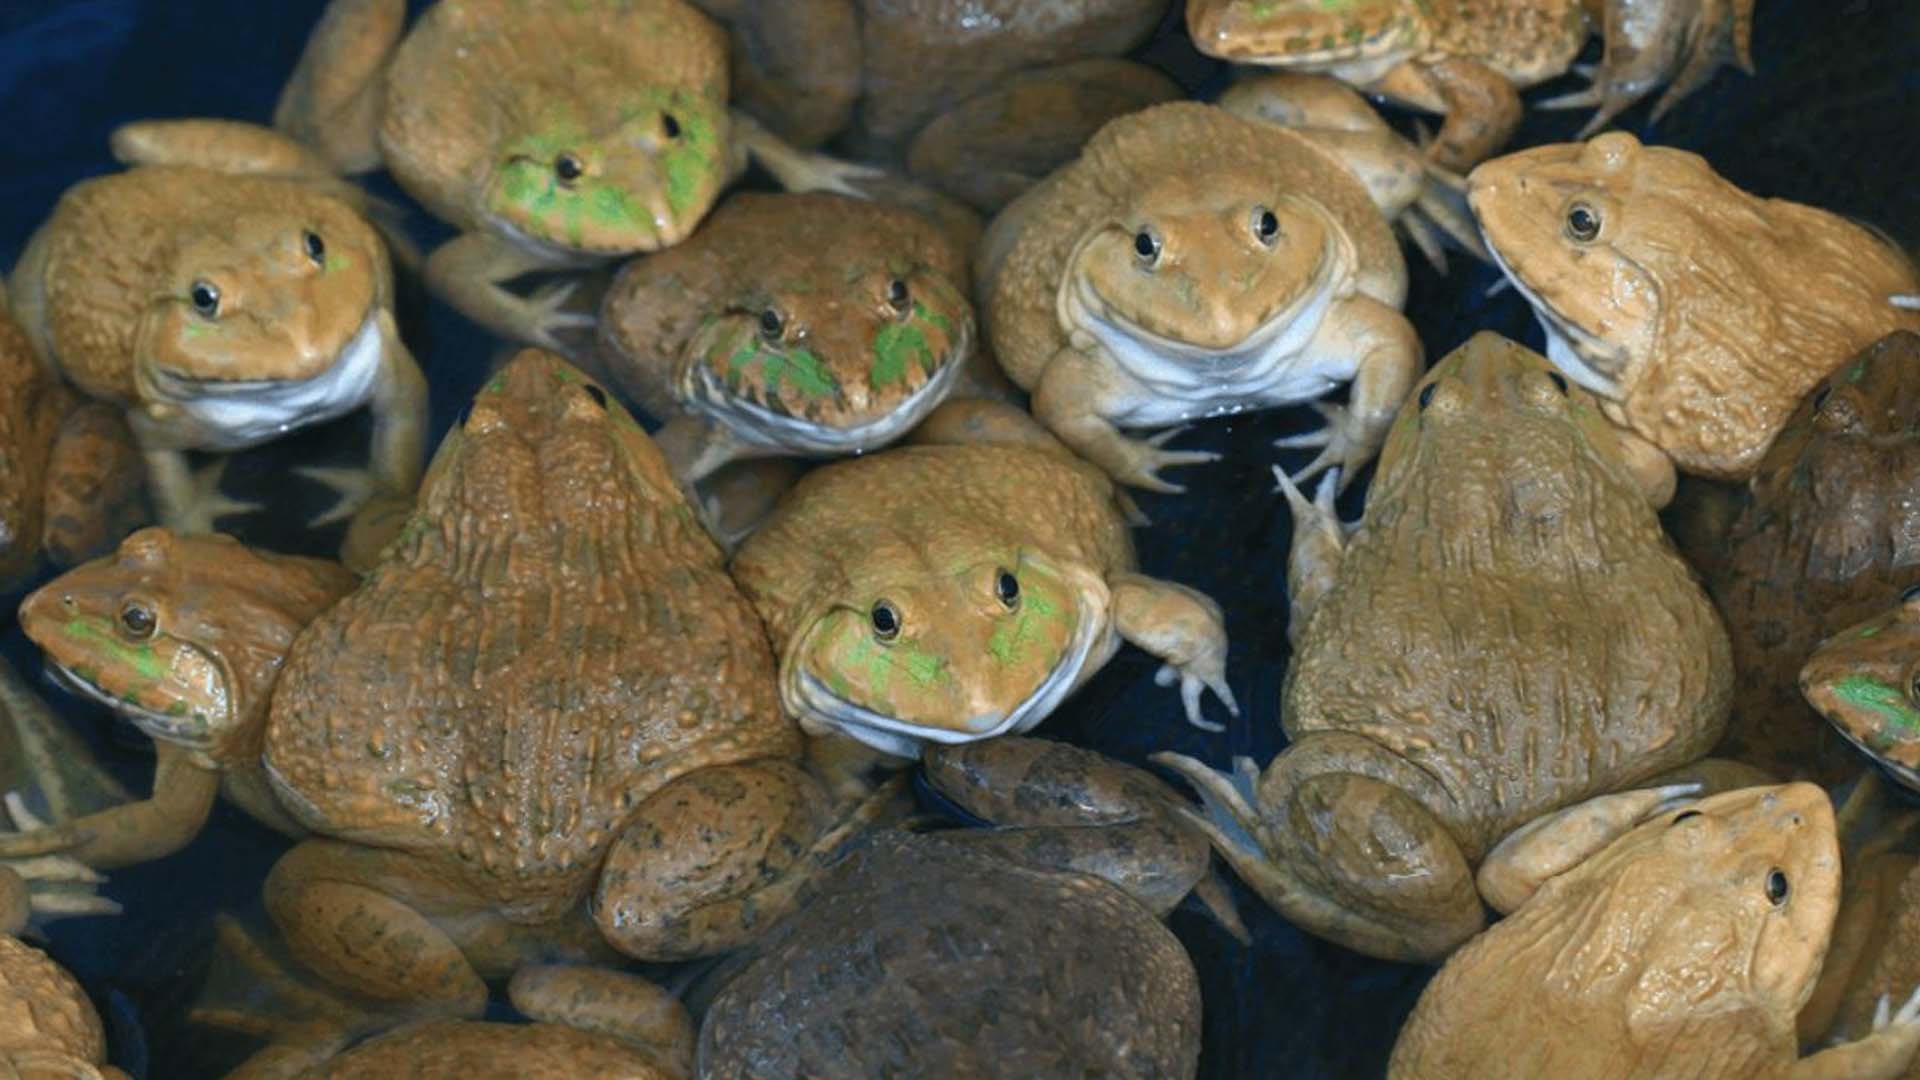 Kỹ thuật nuôi ếch trong bể xi măng cho người mới bắt đầu